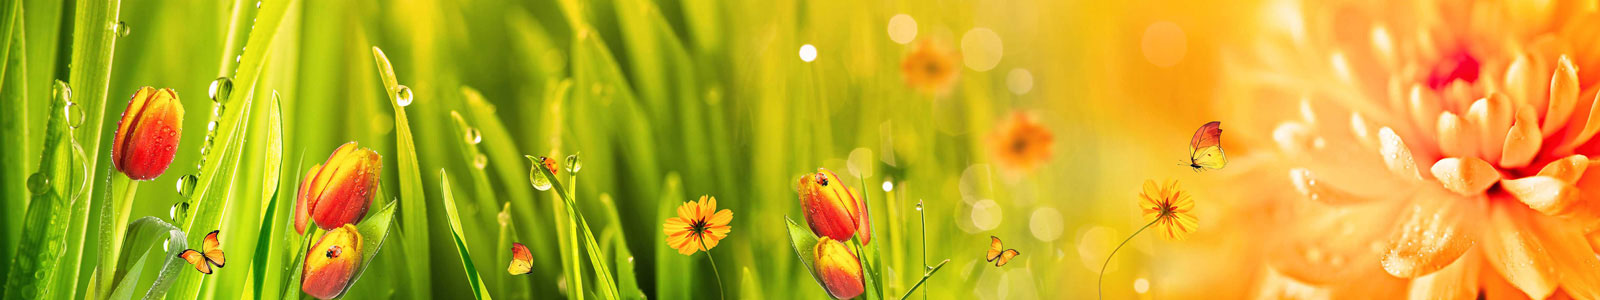 №4976 - Трава с росой, яркие цветы и бабочки